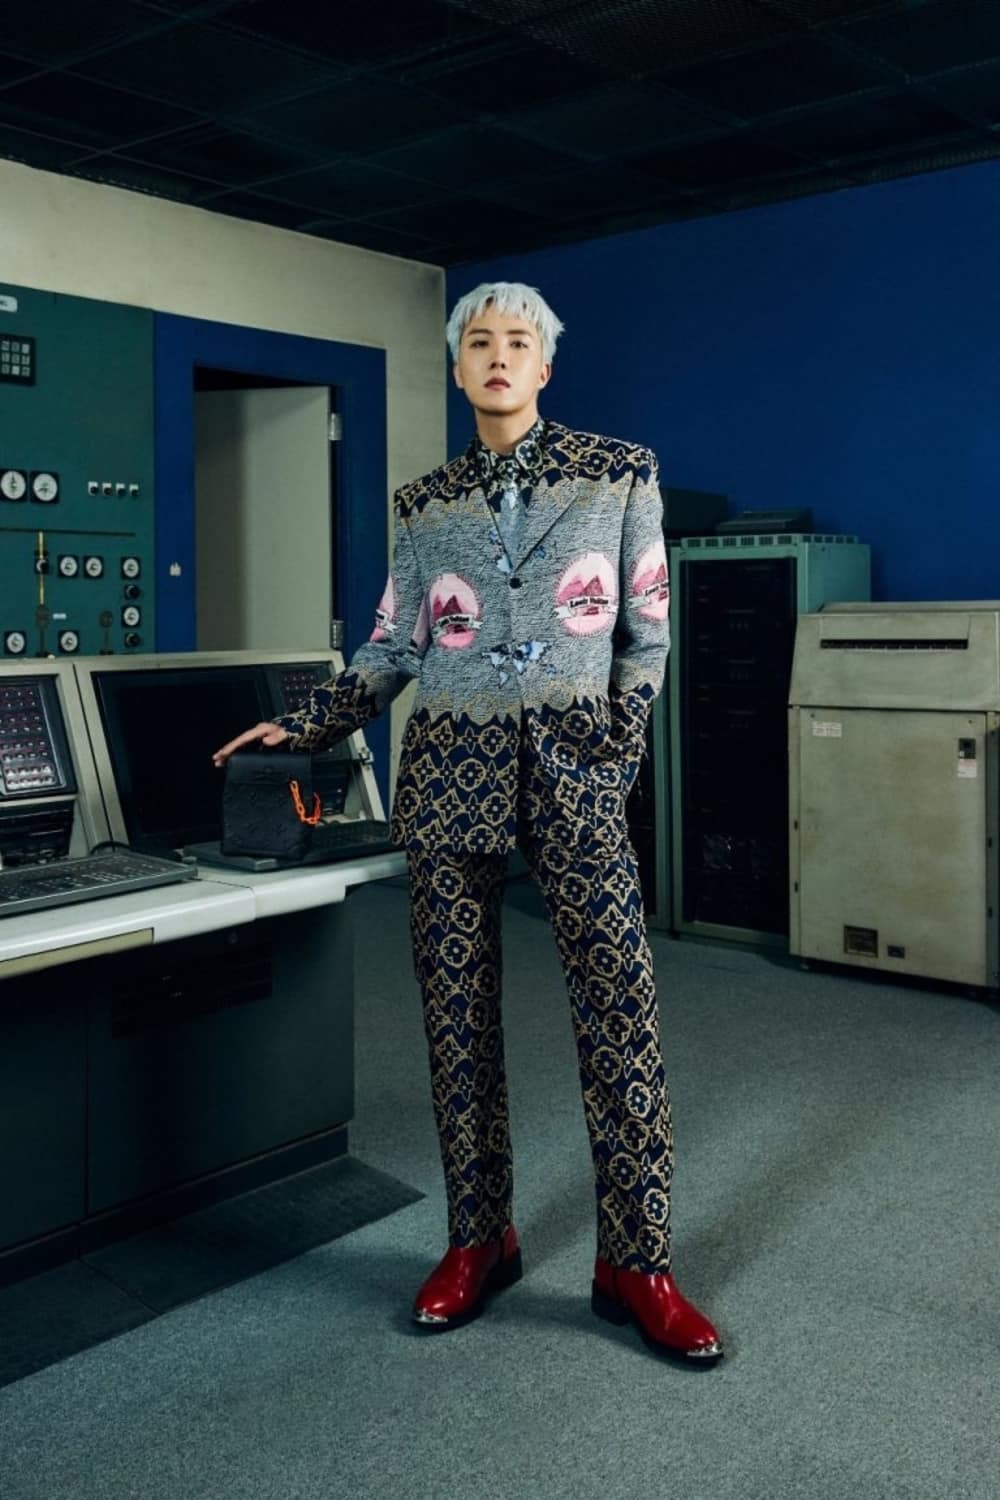 Promosikan Hajat Louis Vuitton, J-Hope BTS Pamer Baju Rp 160 Juta: Udah  Bisa Buat Umroh! - Pop